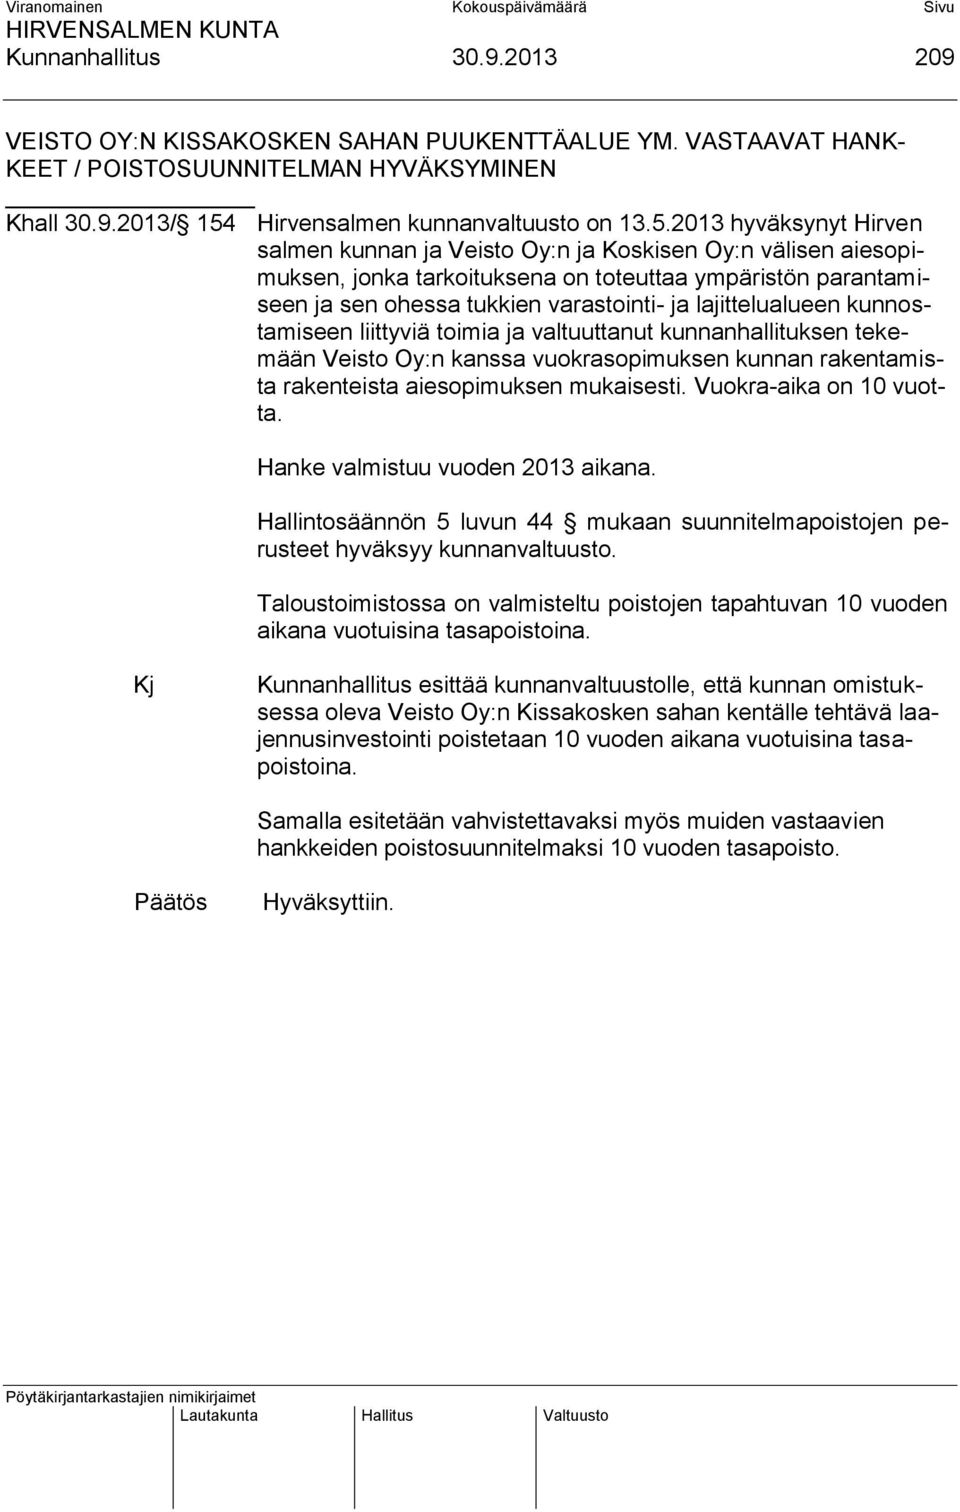 2013 hyväksynyt Hirven salmen kunnan ja Veisto Oy:n ja Koskisen Oy:n välisen aiesopimuksen, jonka tarkoituksena on toteuttaa ympäristön parantamiseen ja sen ohessa tukkien varastointi- ja